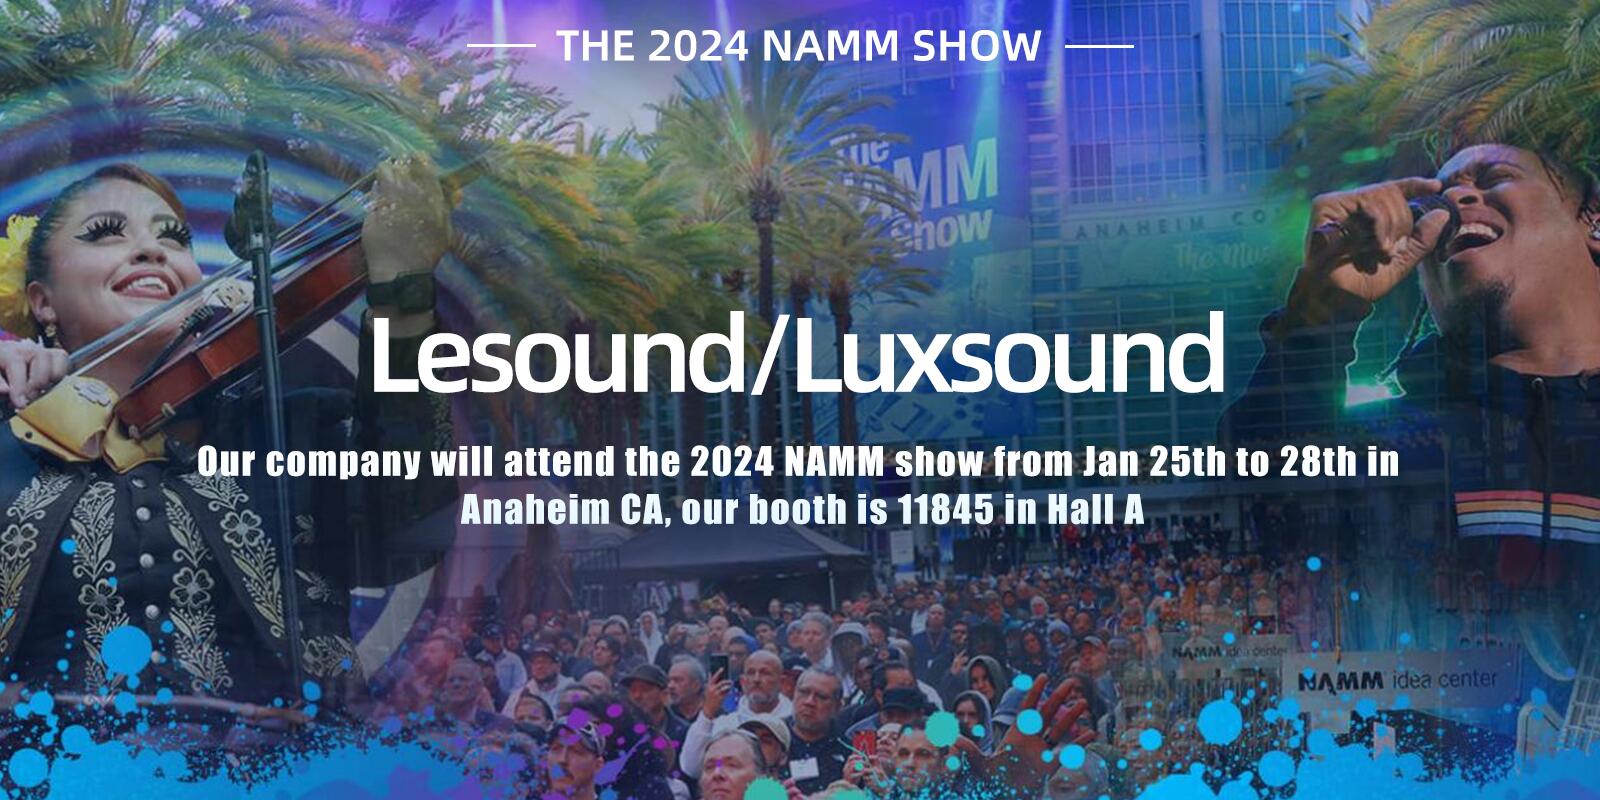 Η Lesound/Luxsound θα παρακολουθήσει την εκπομπή NAMM 2024 από τις 25 έως τις 28 Ιανουαρίου στο Anaheim CA